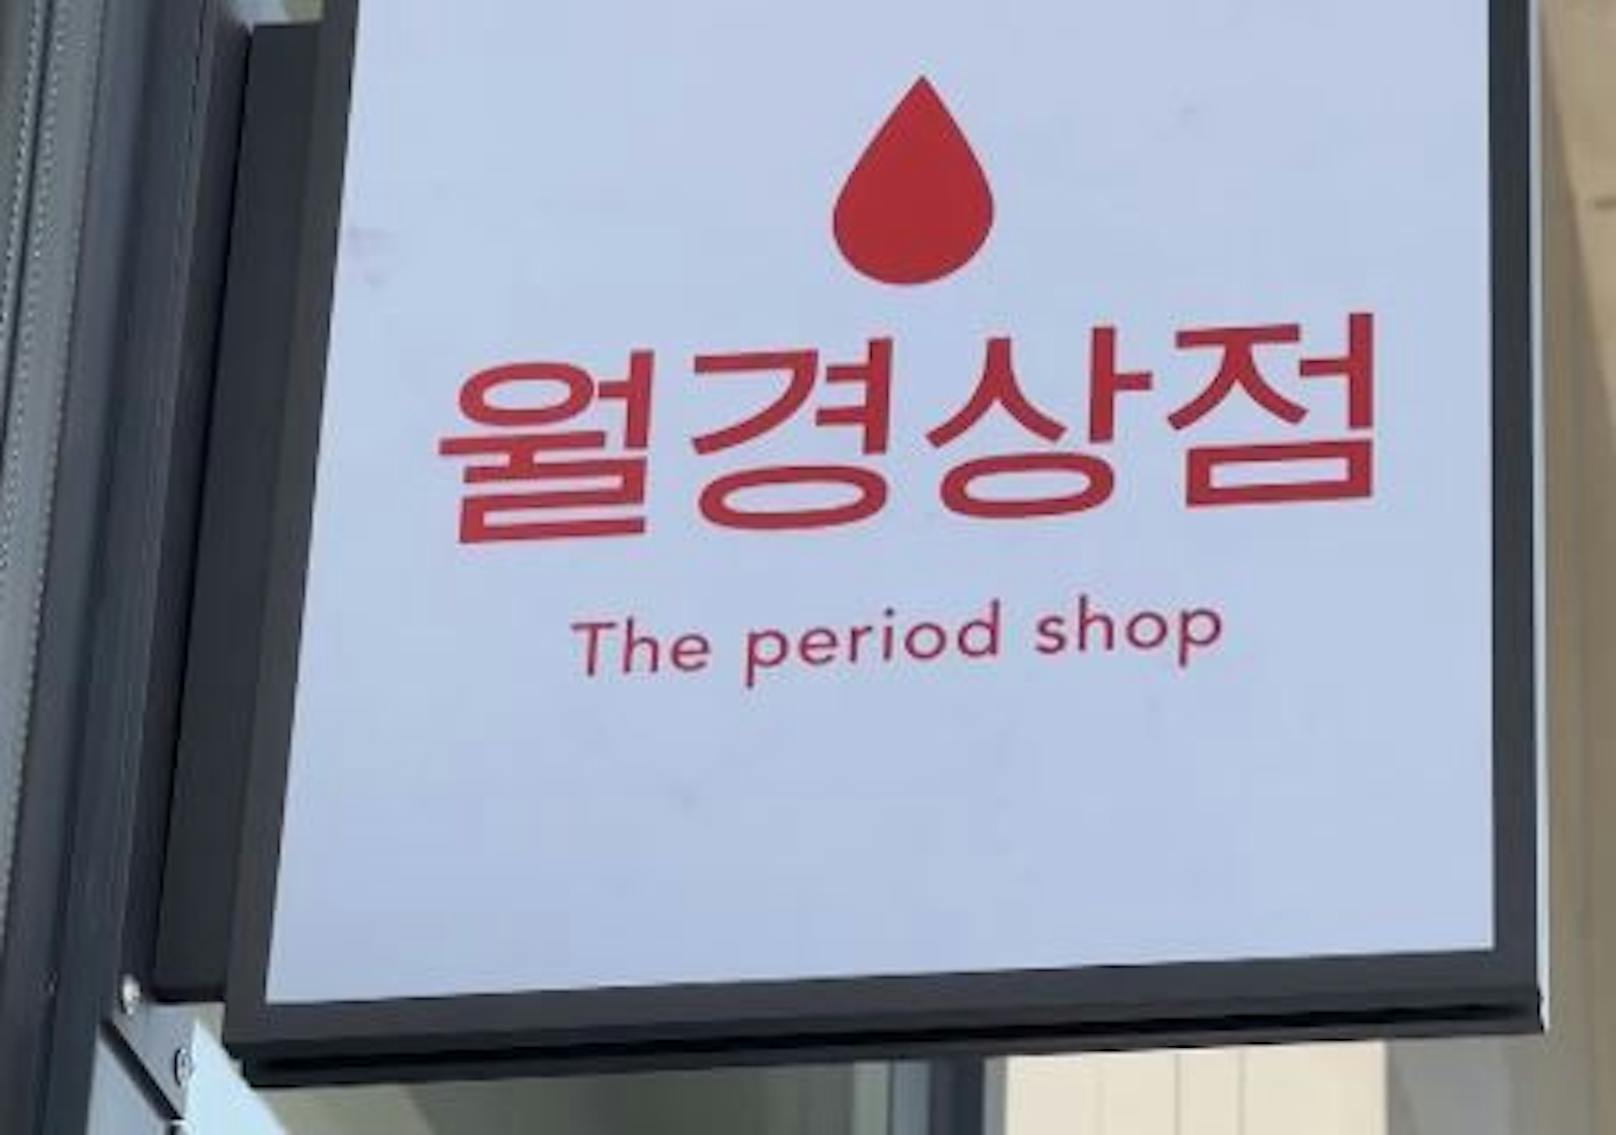 Jihye Ahn möchte mit ihrem Shop das Tabu der Menstruation in Südkorea brechen.